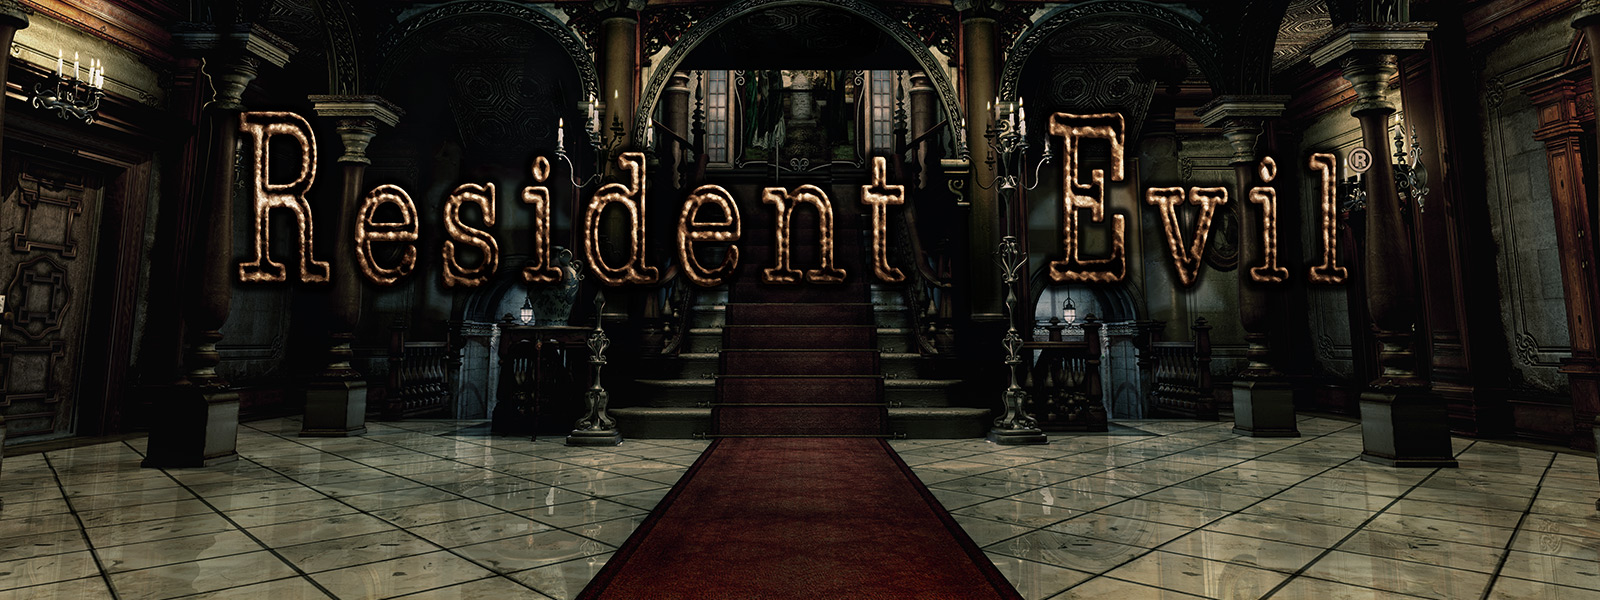 Resident Evil, pramea holvikaarellinen aula, jonka portailla on punainen matto